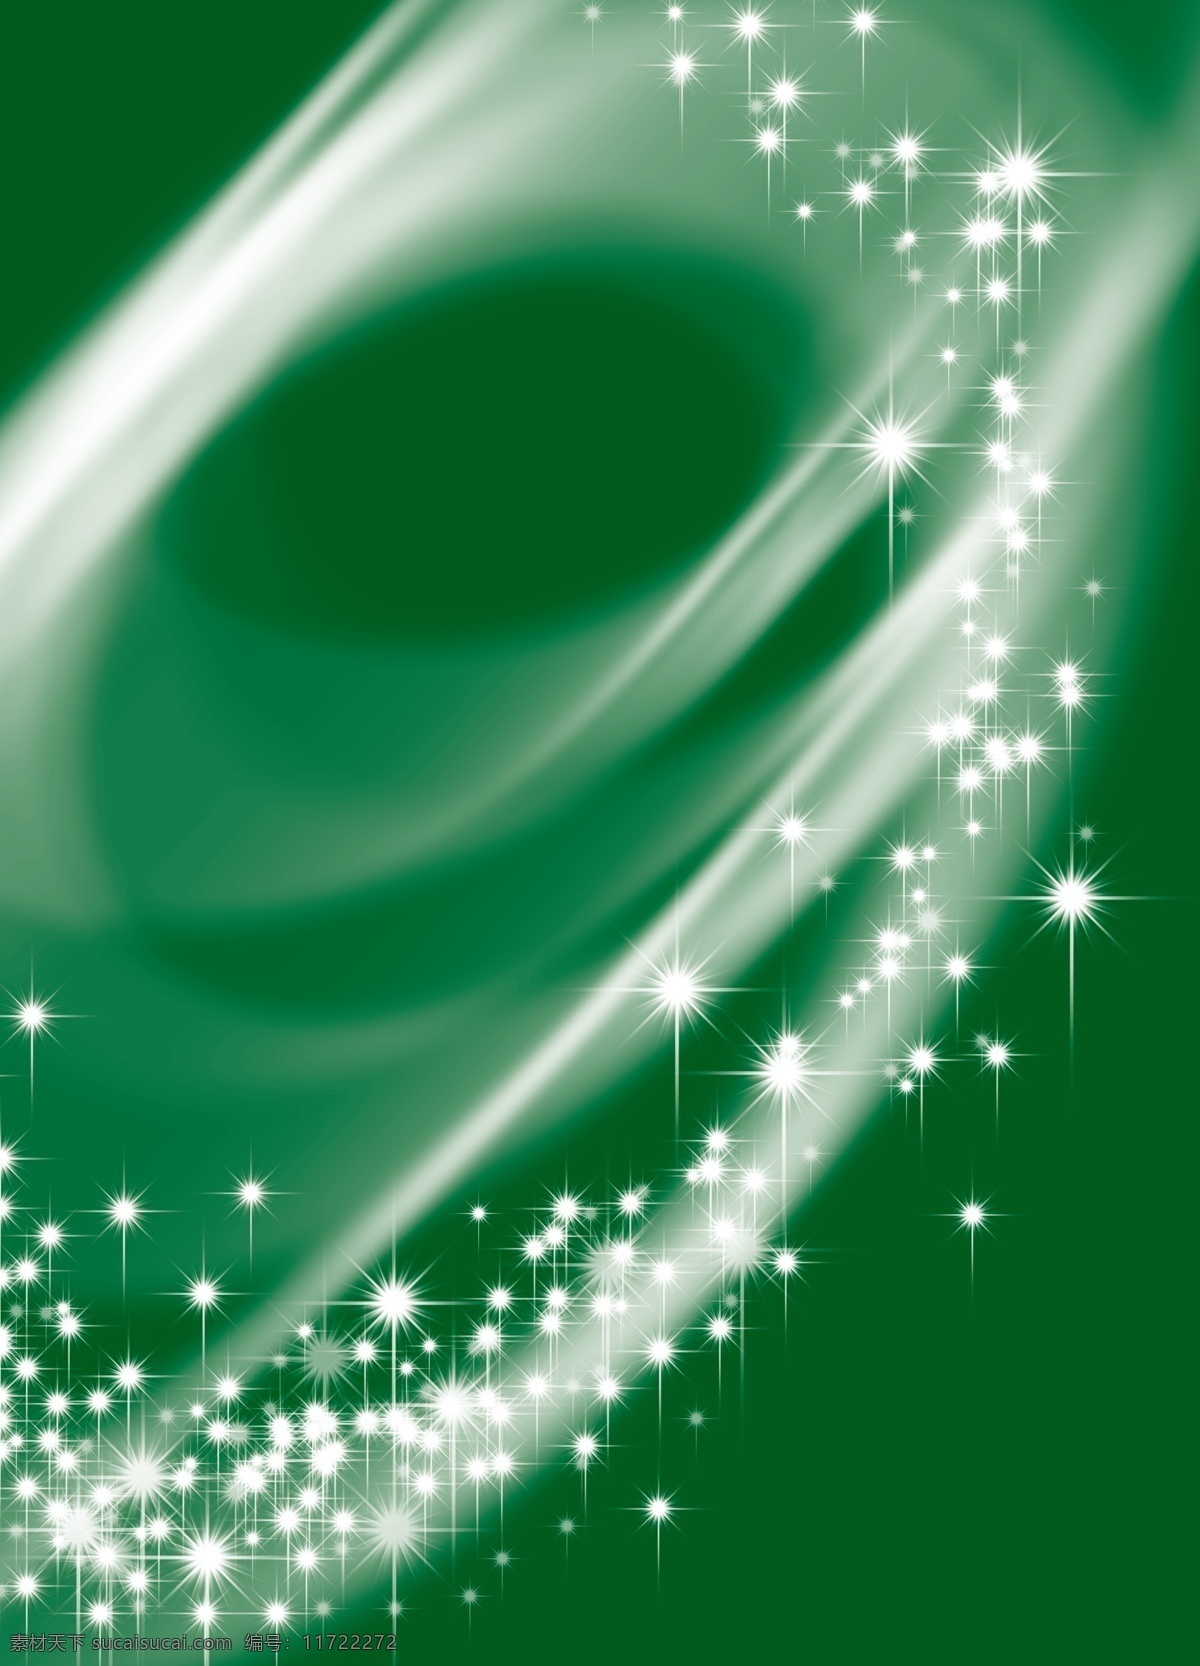 绿色背景素材 绿色 绿色背景 发光星星 星河 背景素材 分层 源文件